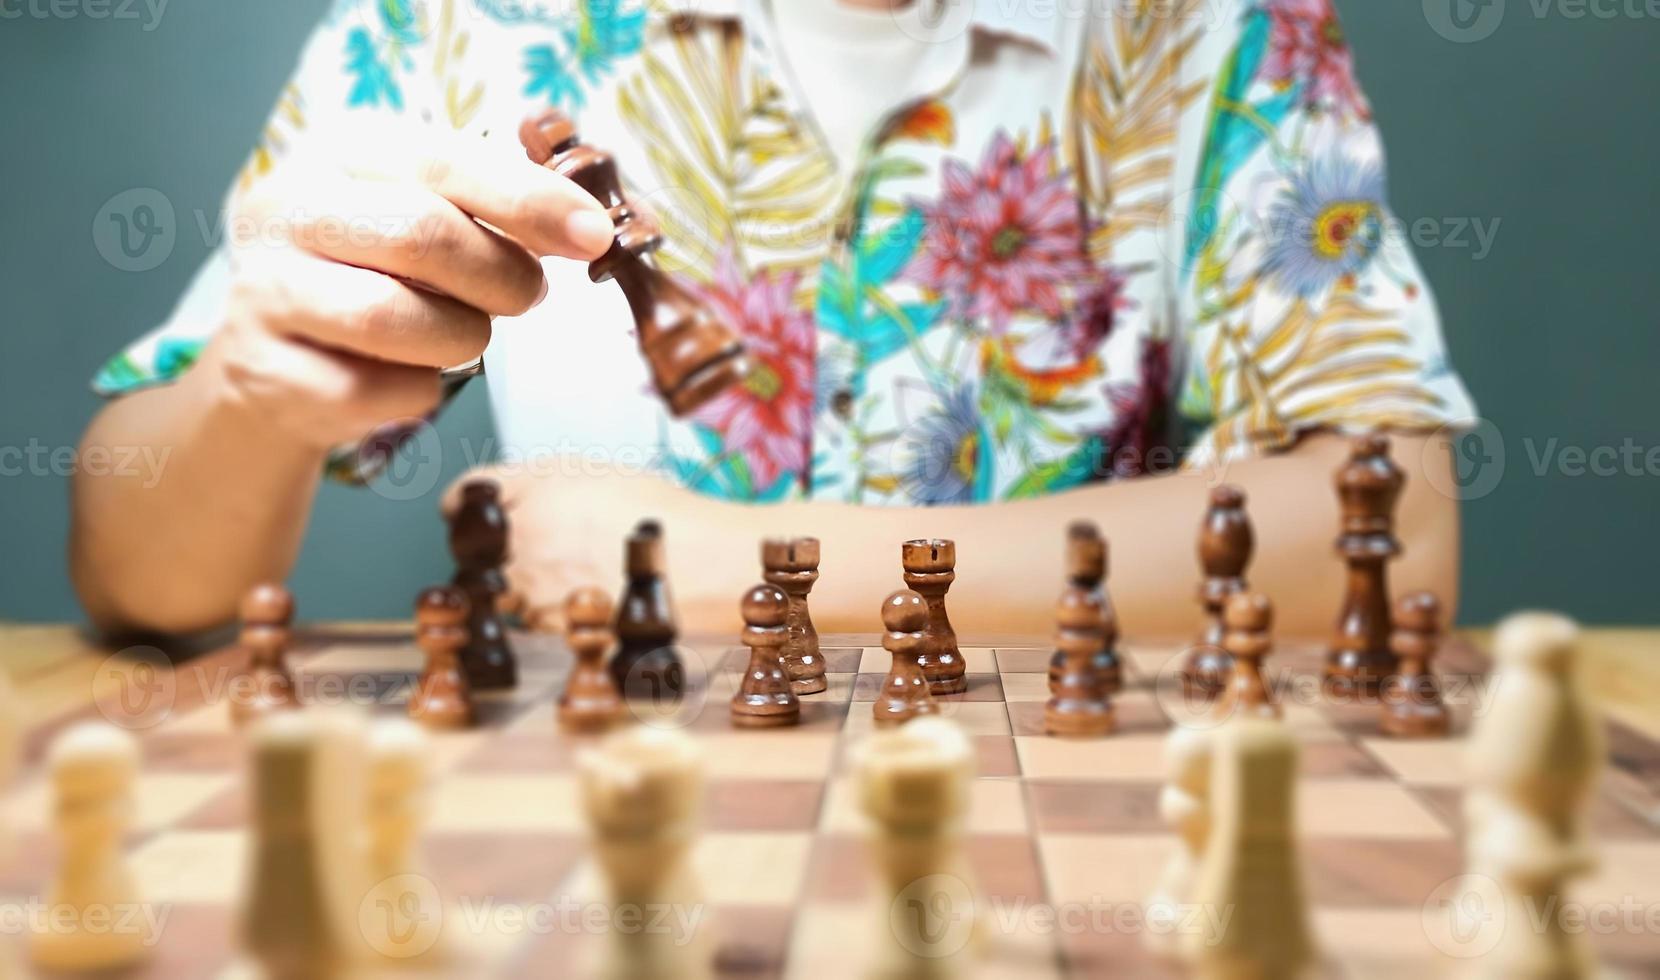 el juego de ajedrez del hombre muestra una fuerte voluntad de planificar y luchar en el campo para derrotar a tus oponentes. Las imágenes muestran diferentes períodos de tiempo. de principio a fin y pronosticar la bajada del ganador. foto